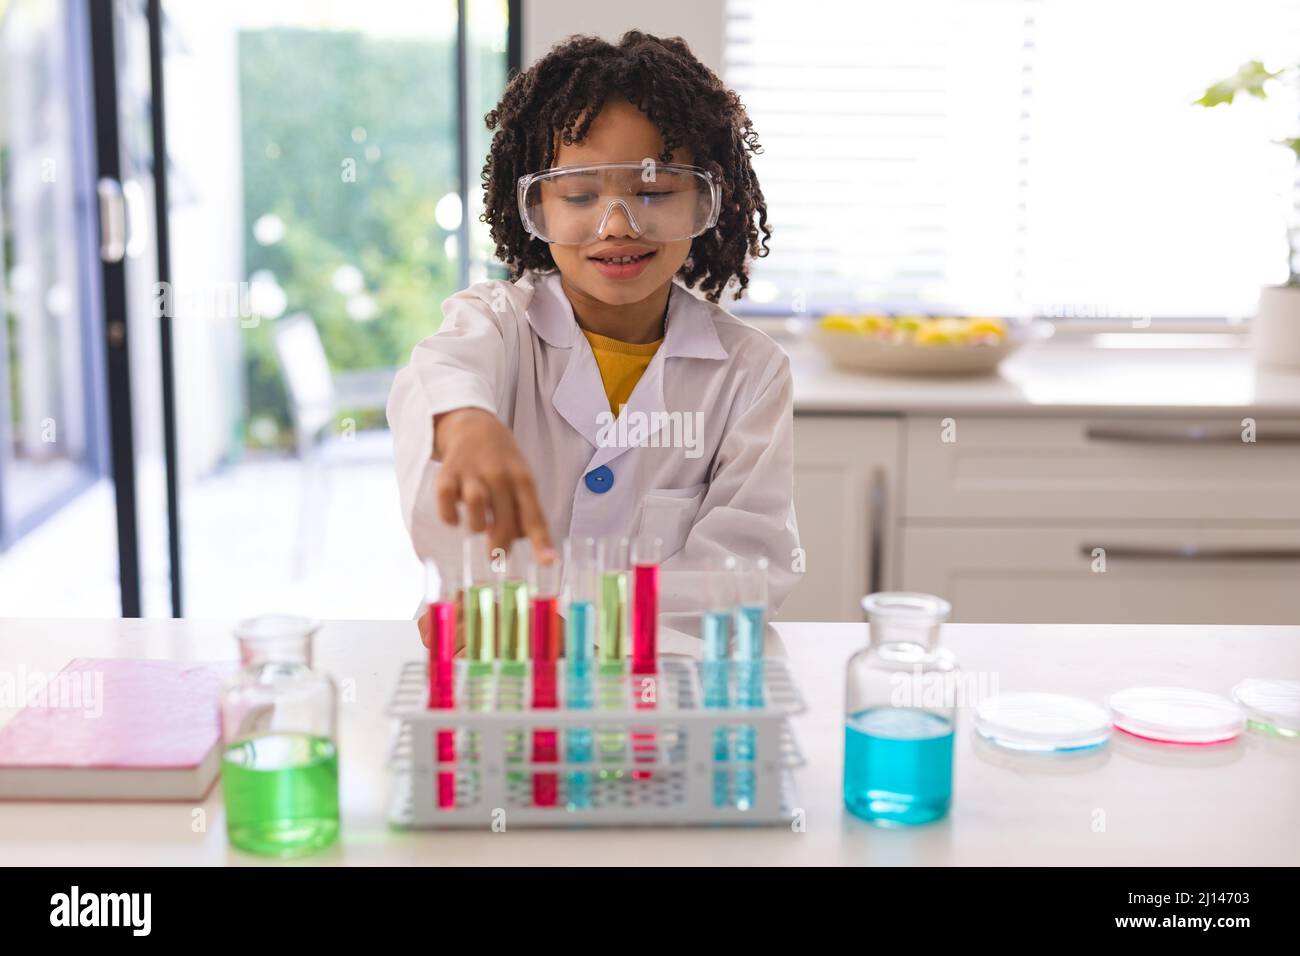 Netter lächelnder hispanischer Junge mit Schutzbrille, der wissenschaftliche Forschungen mit Chemikalien durchgeführt hat Stockfoto